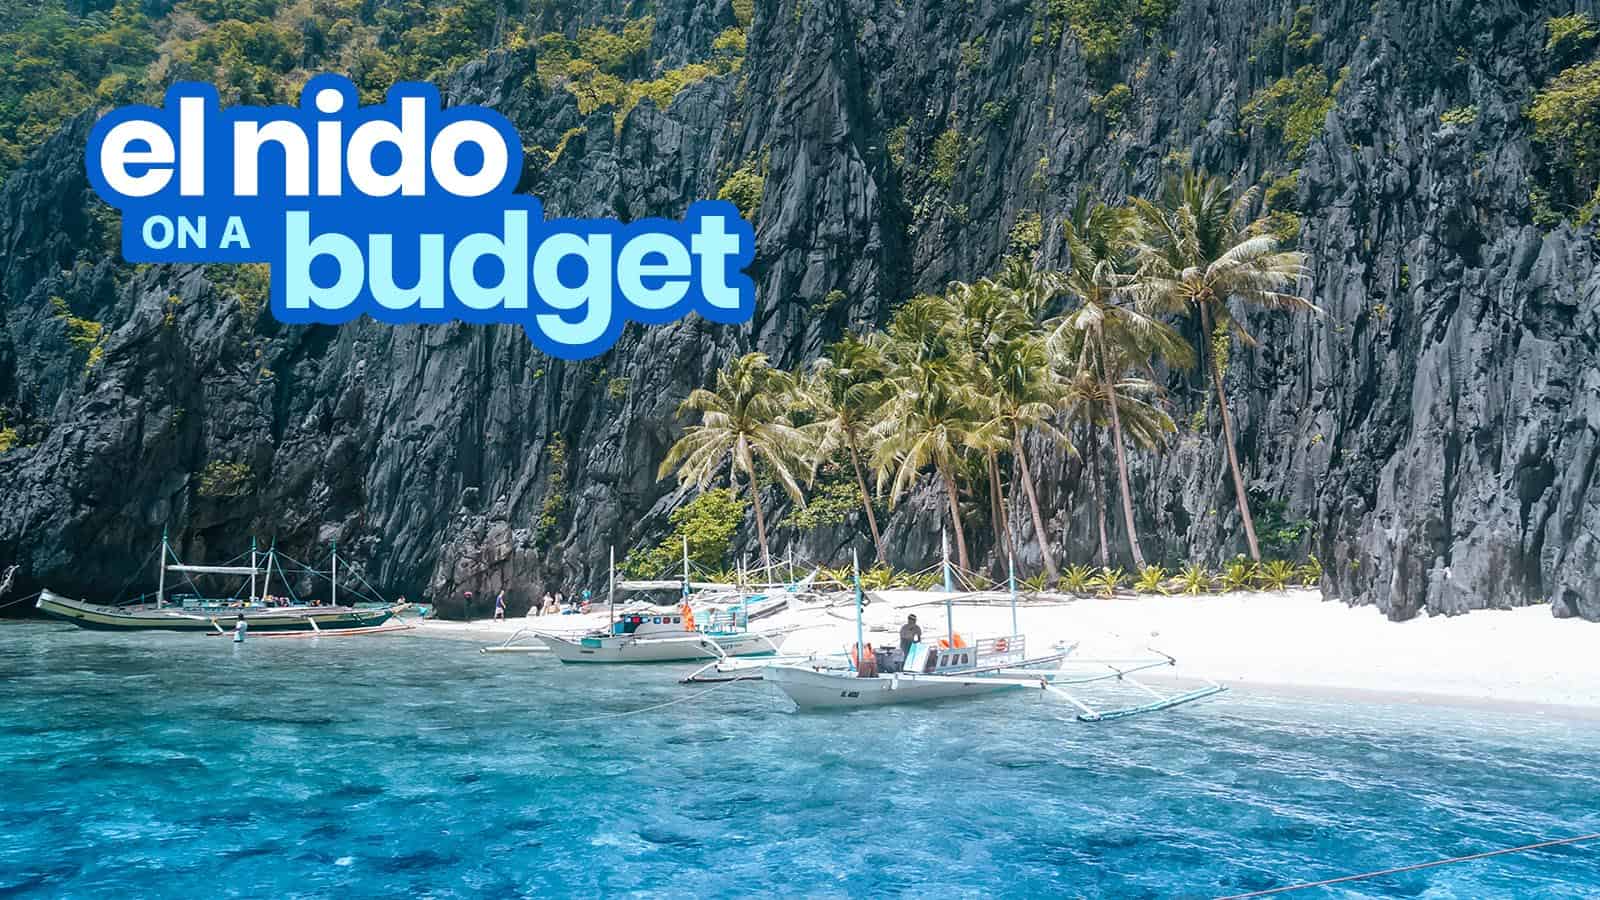 EL NIDO PALAWAN Travel Guide with Sample Itinerary & Budget